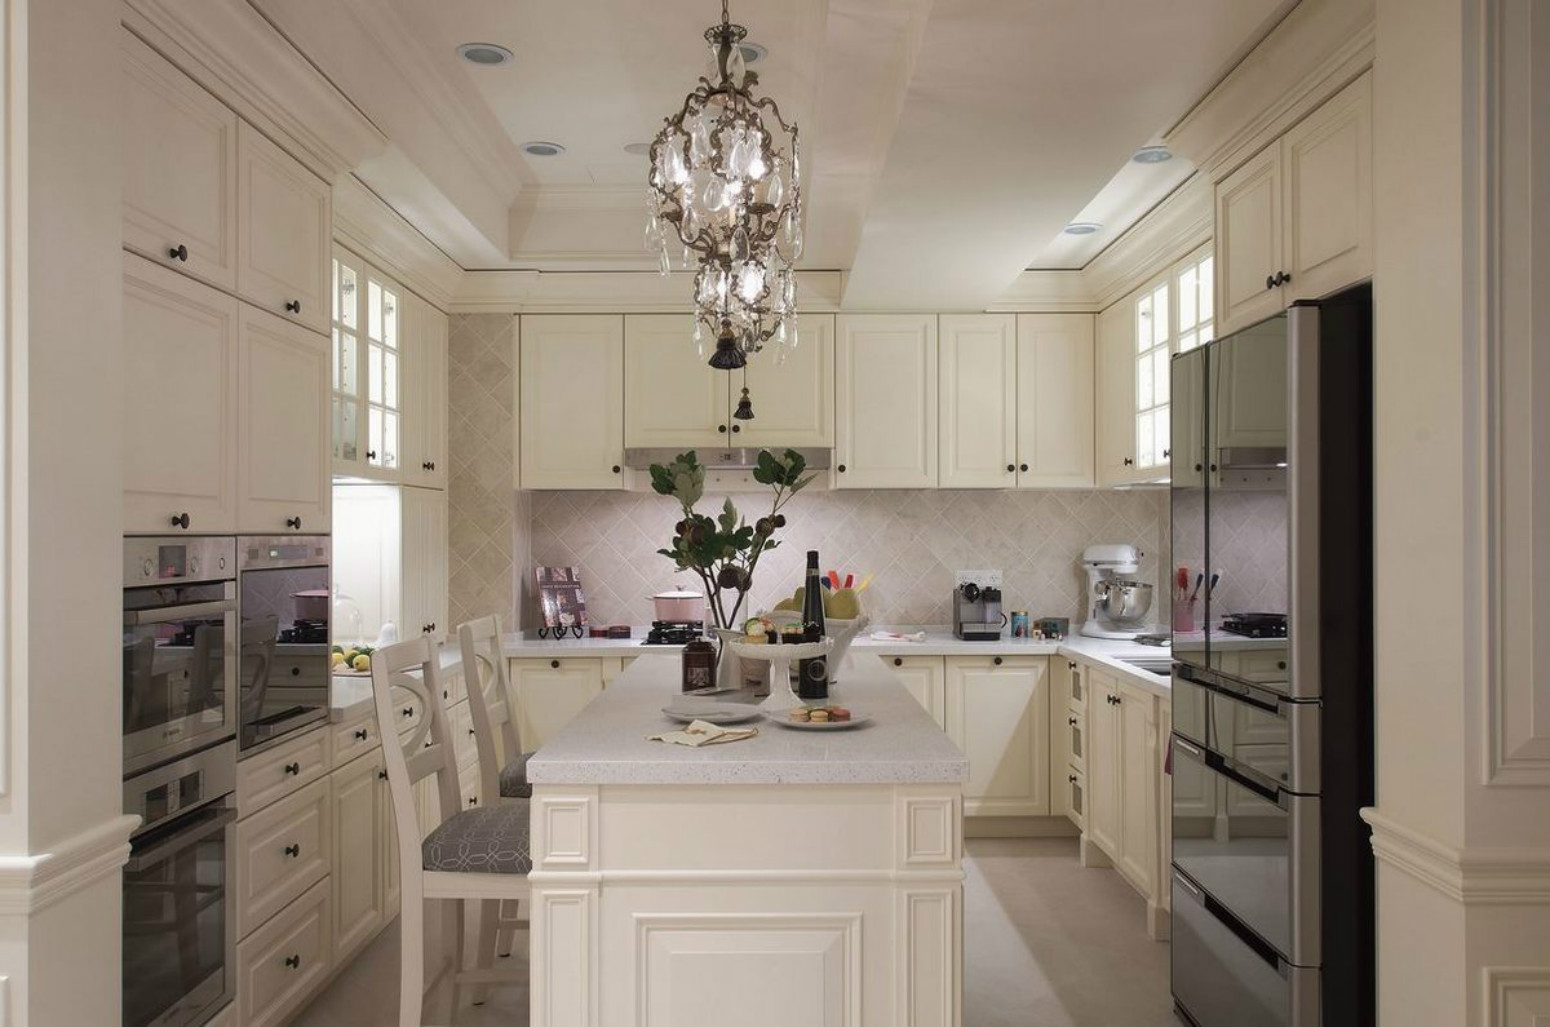 厨房以白色为主题，搭配岛台设计在空间中，令烹饪环境更加通透舒适。